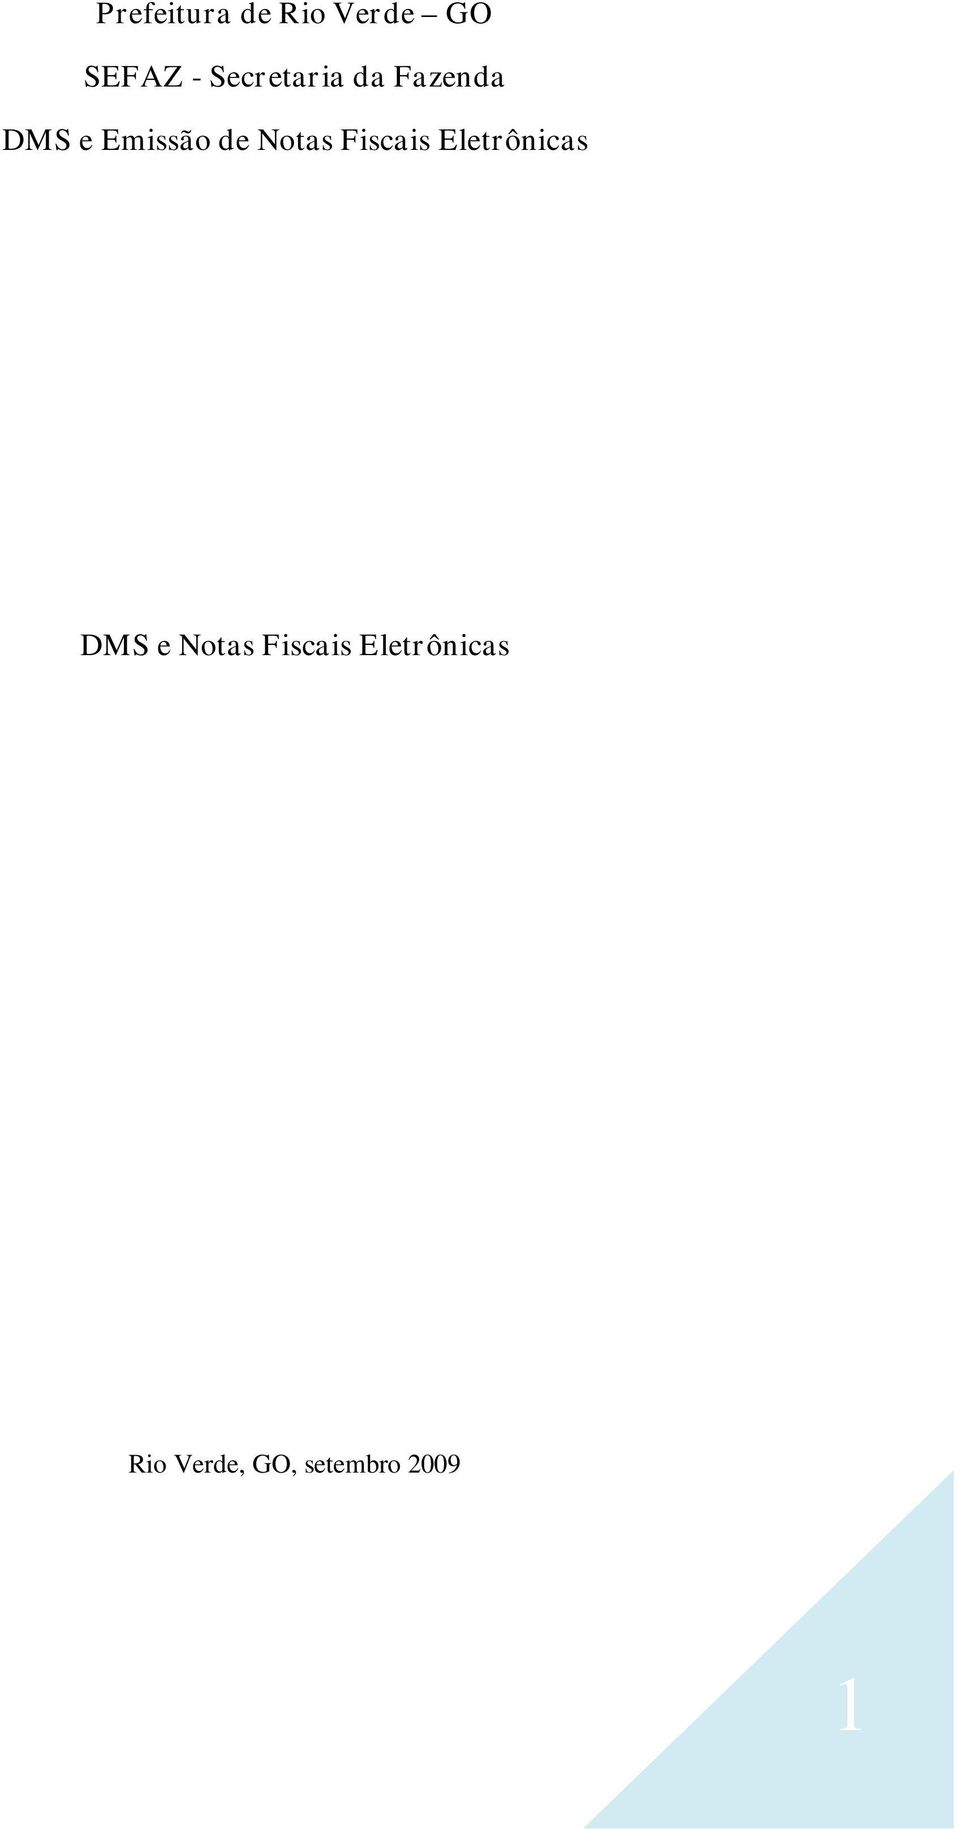 Notas Fiscais Eletrônicas DMS e Notas